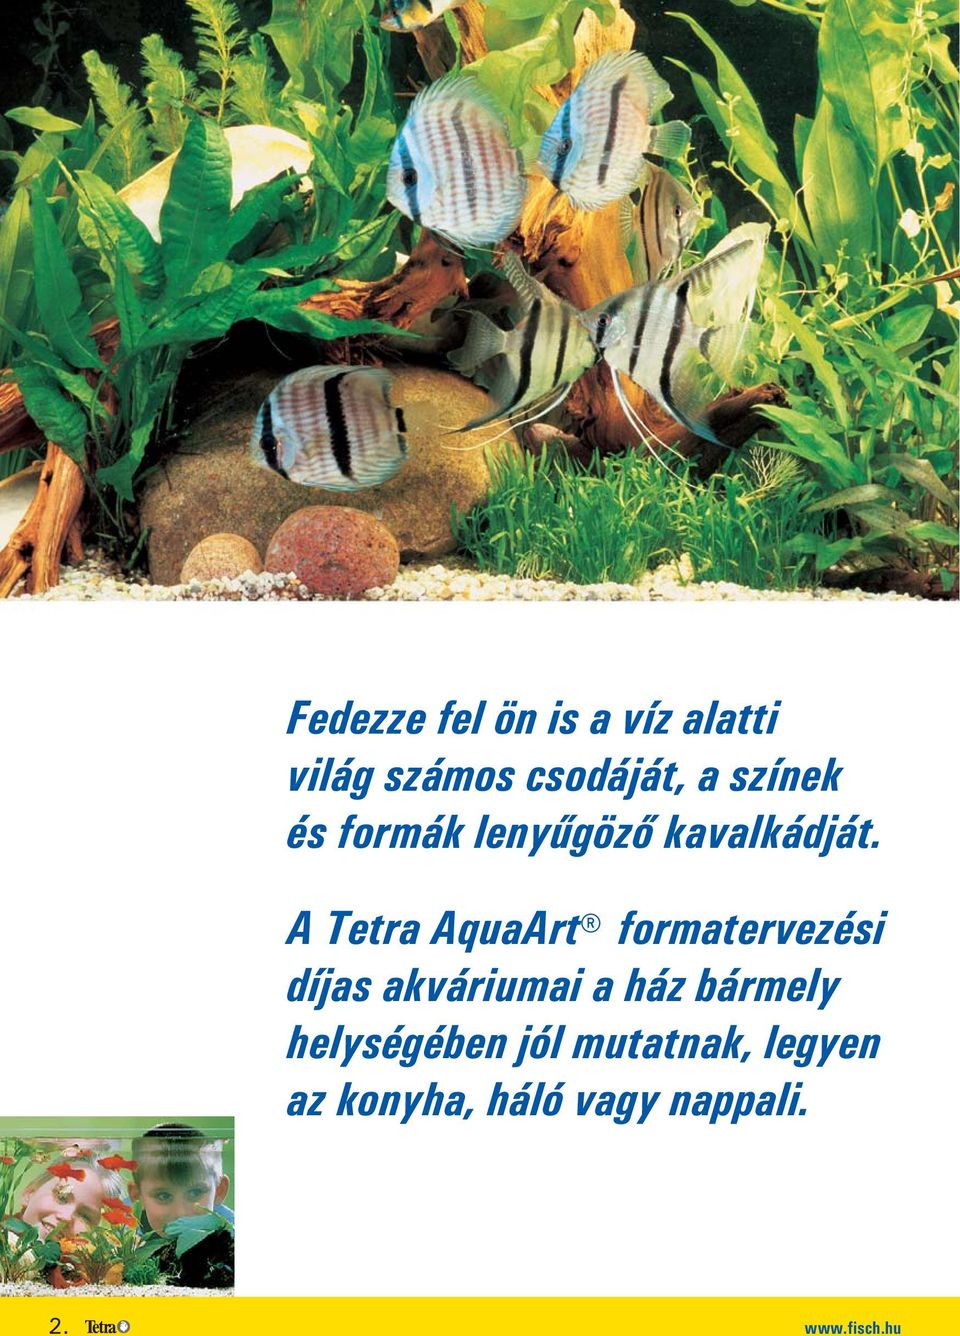 A Tetra AquaArt formatervezési díjas akváriumai a ház